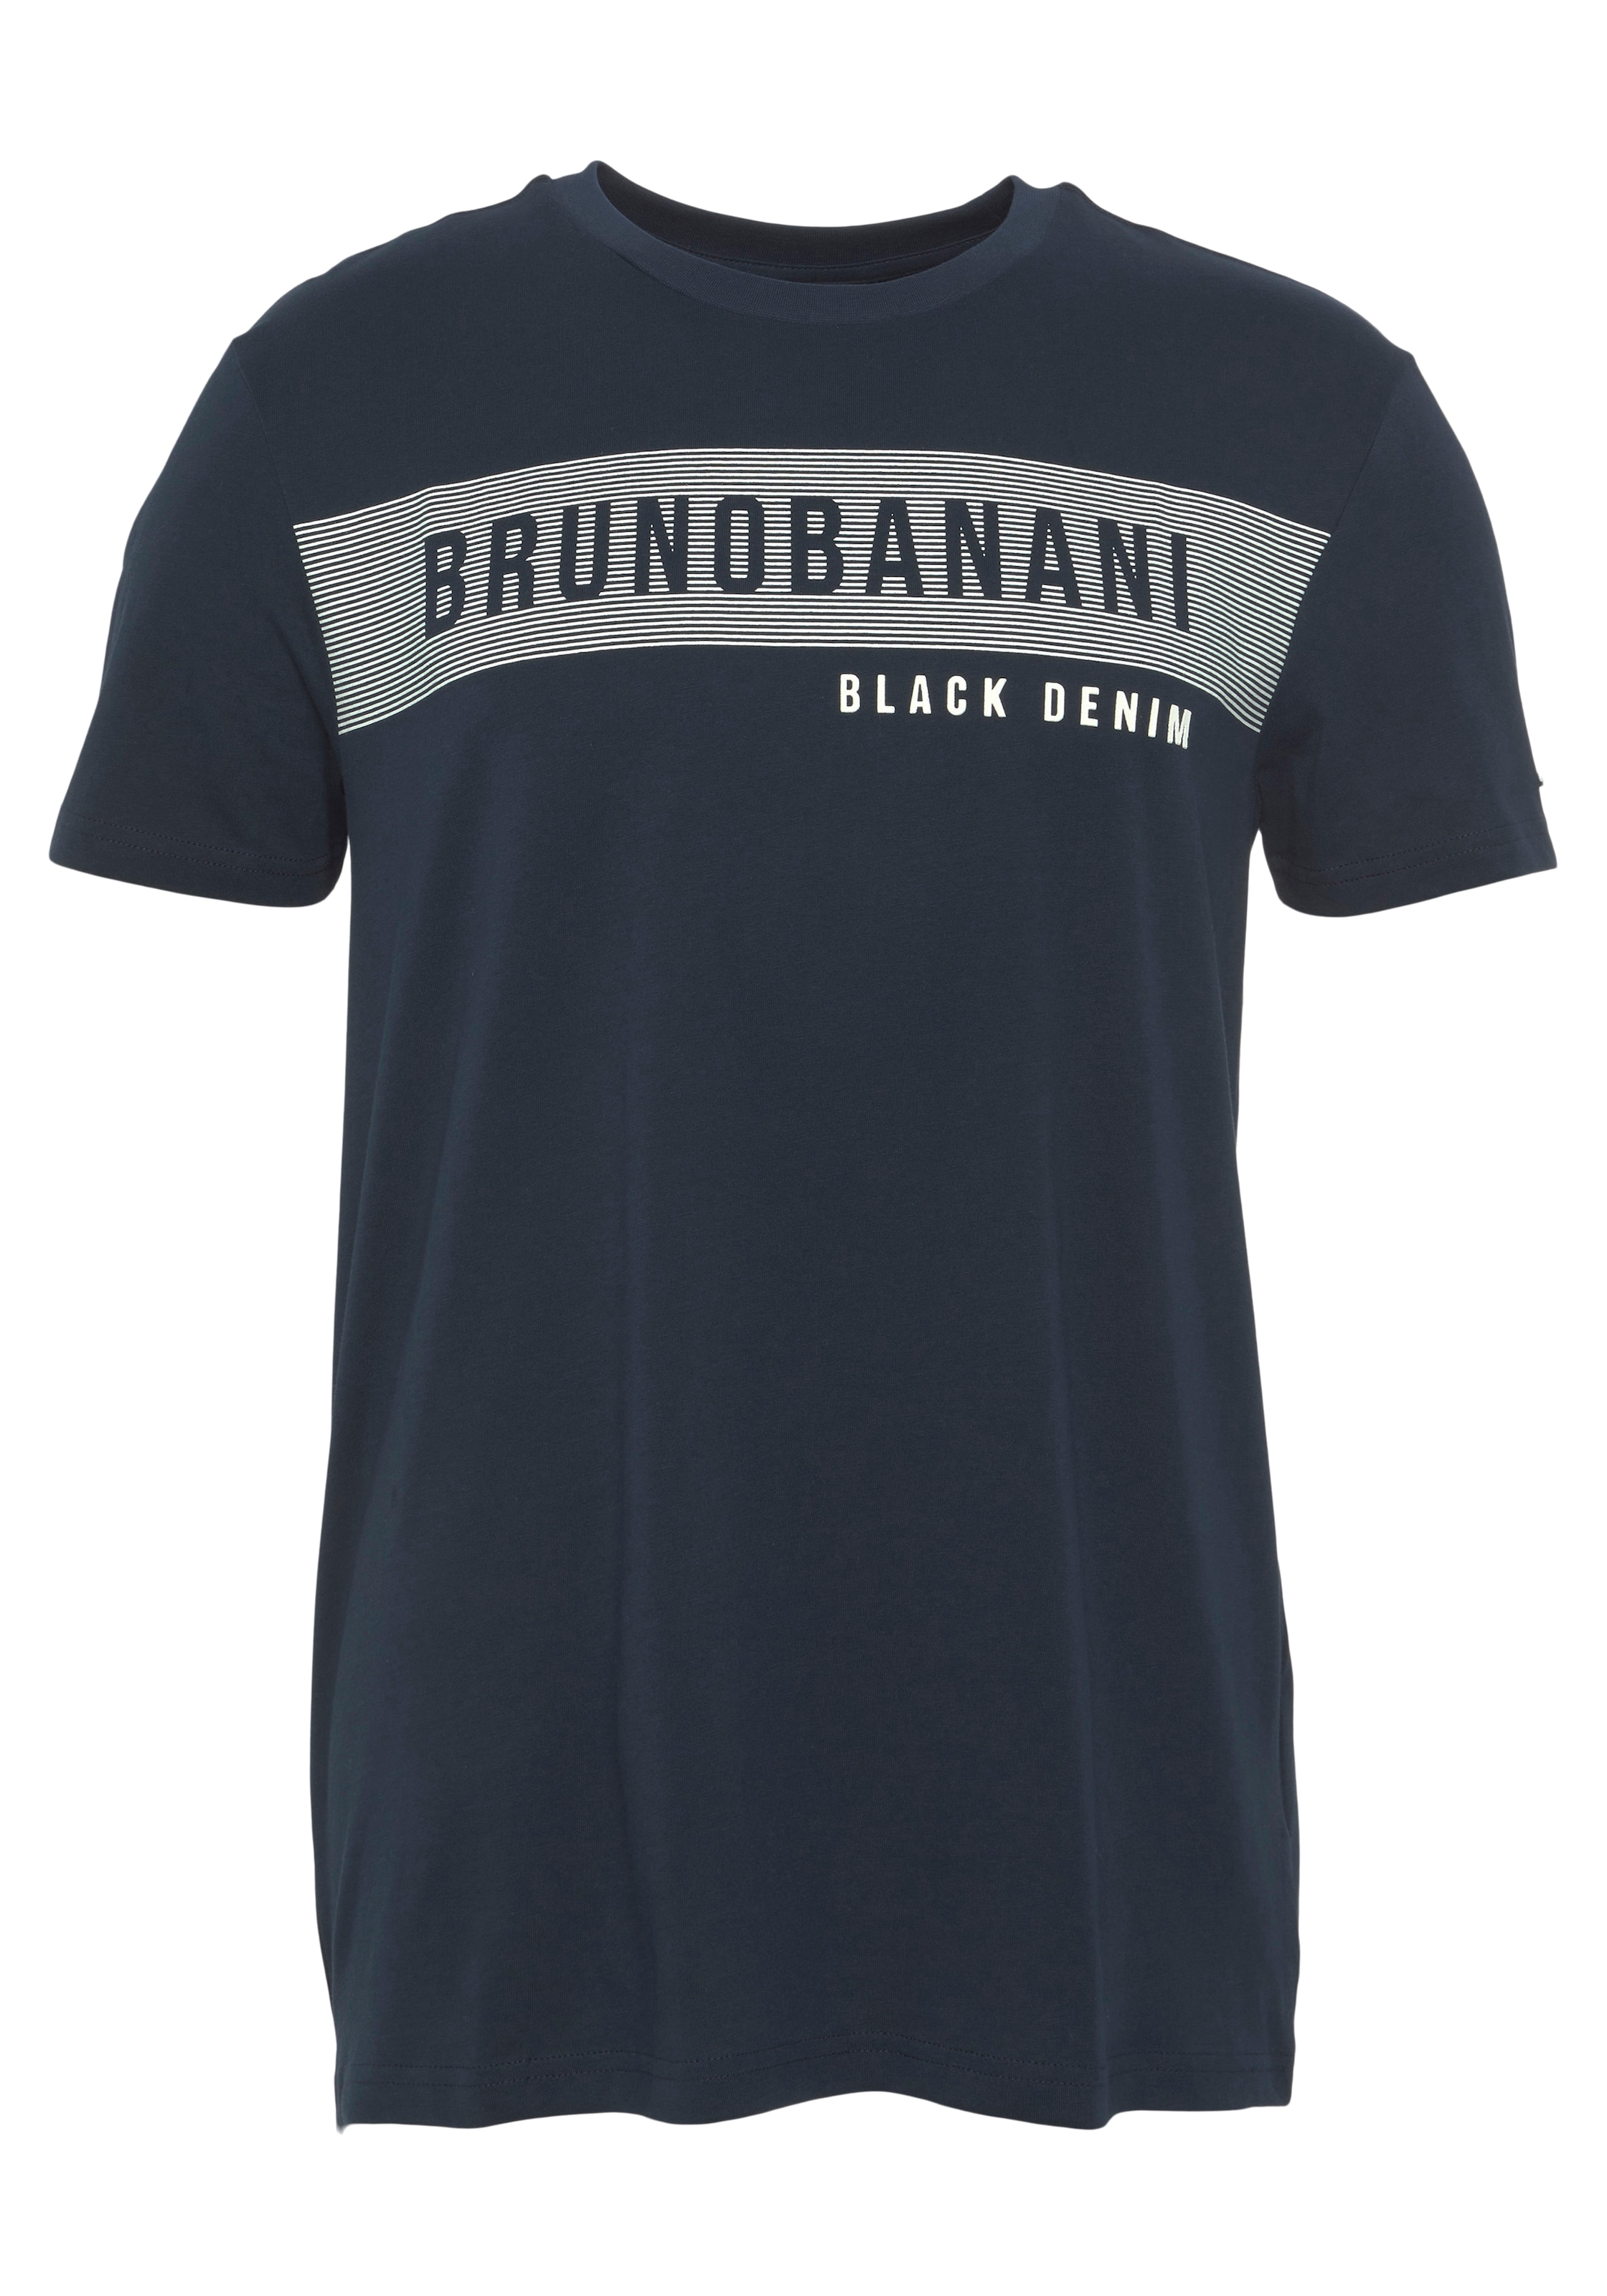 Banani Markenprint shoppen online OTTO bei mit T-Shirt, Bruno